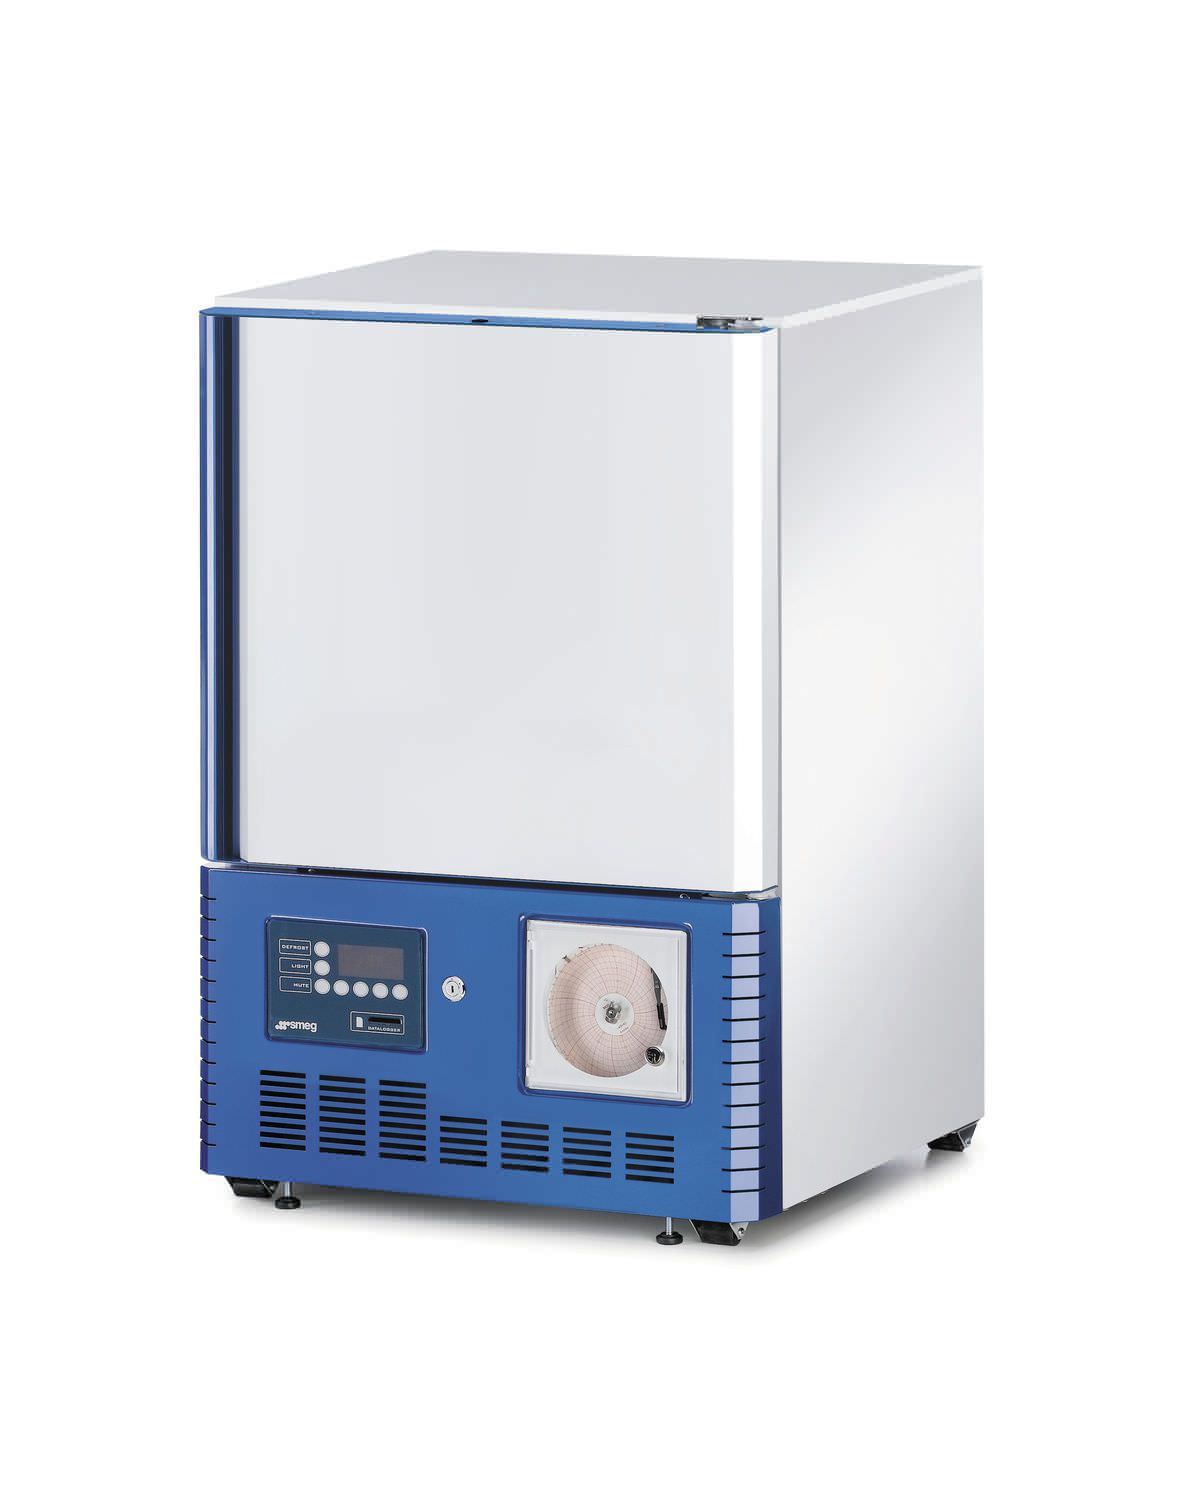 Laboratory refrigerator / built-in / 1-door SMEG